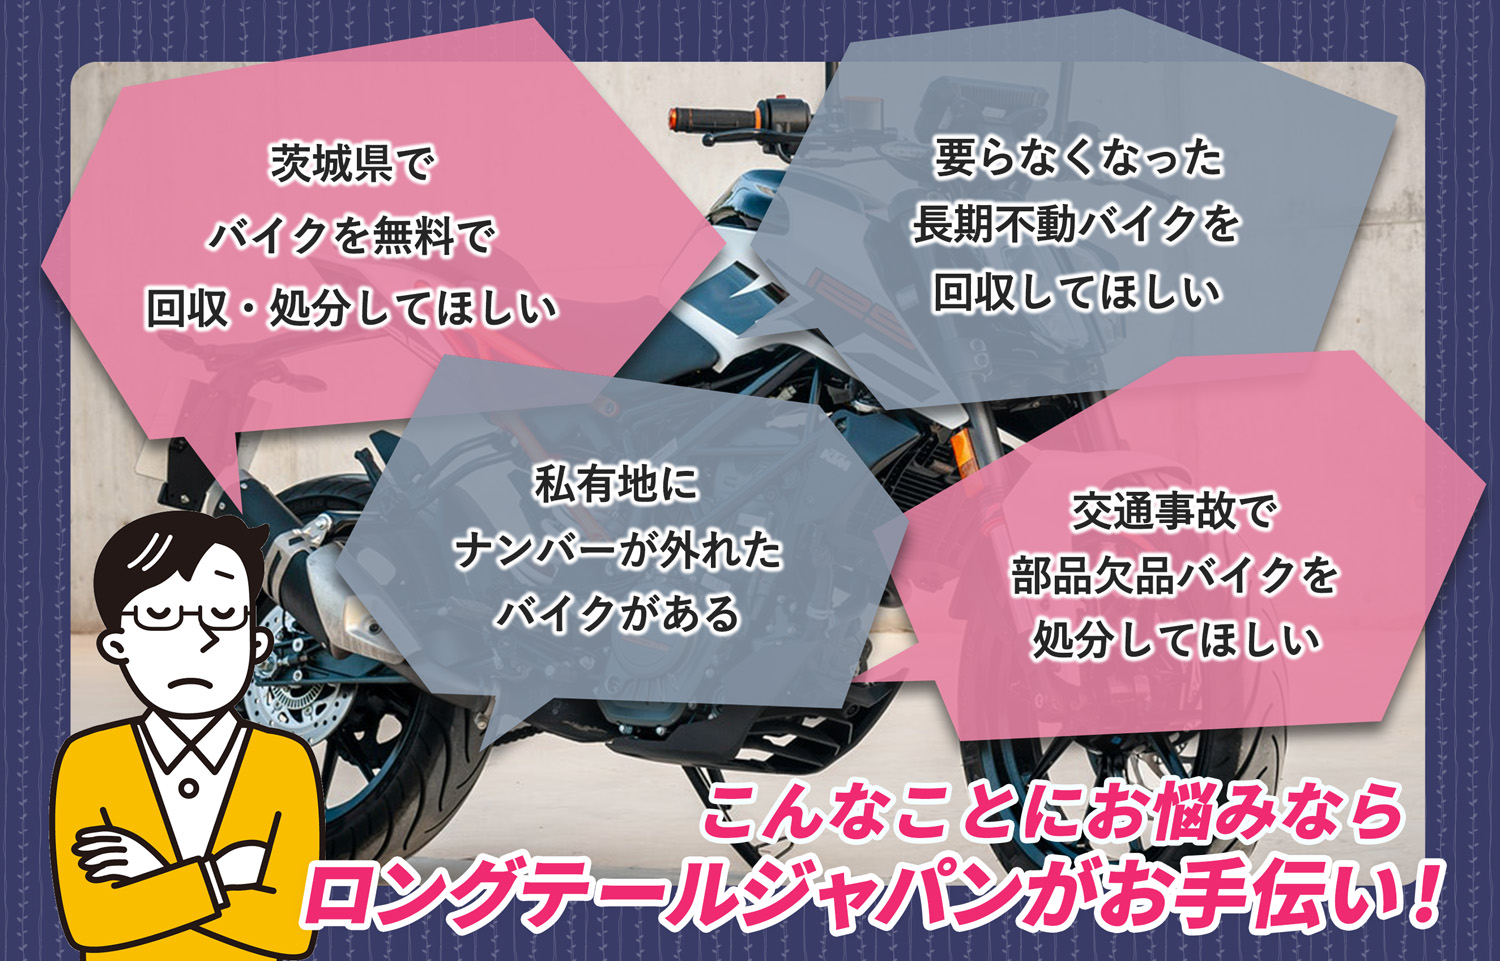 茨城県でこんなバイクの処分にお困りでしたらバイク無料回収処分隊がお手伝いいたします。